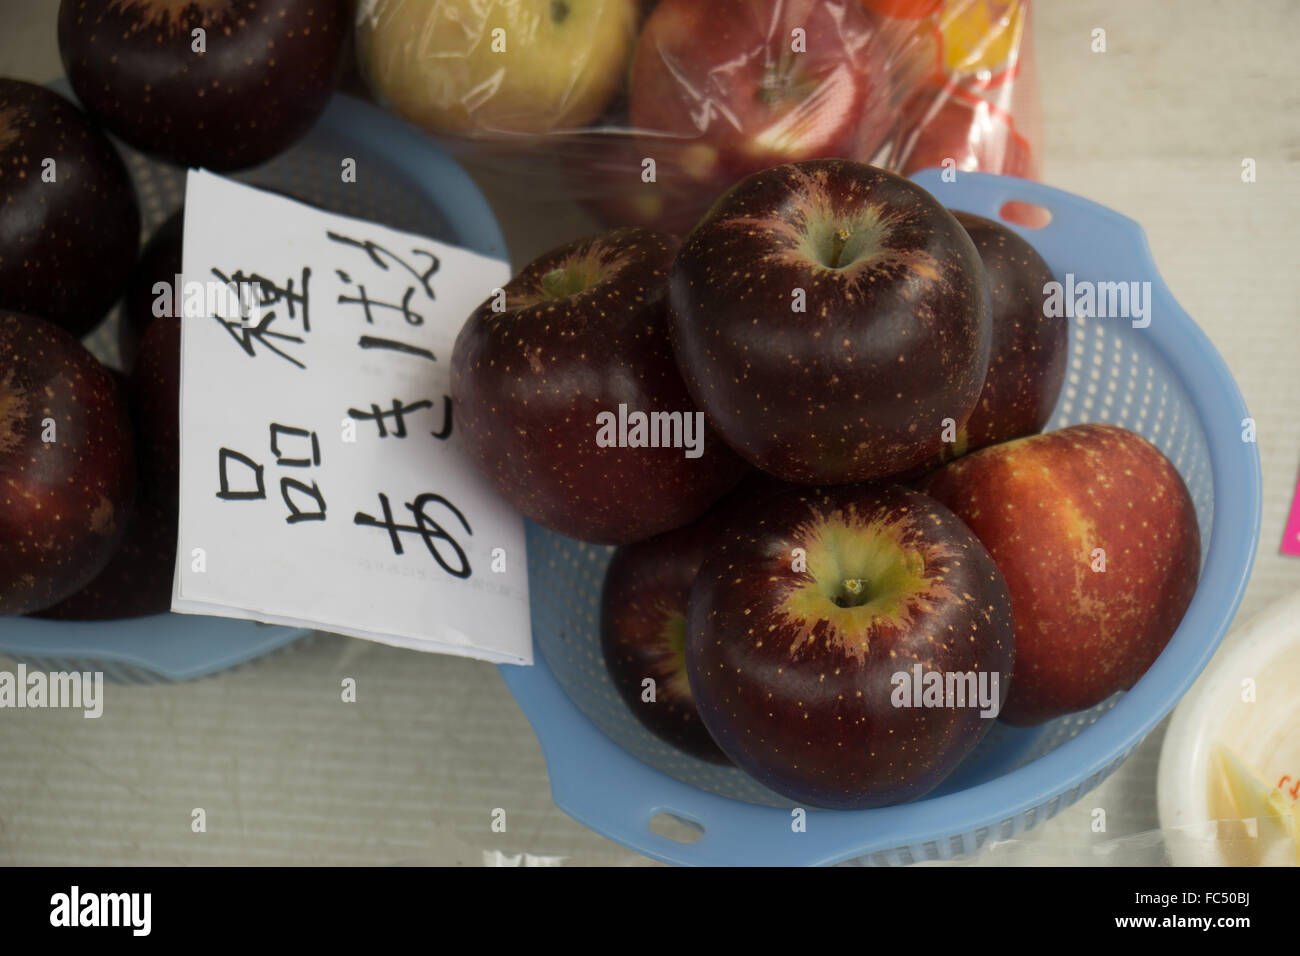 Las manzanas Fuji Takayama en calle del mercado para la venta Foto de stock